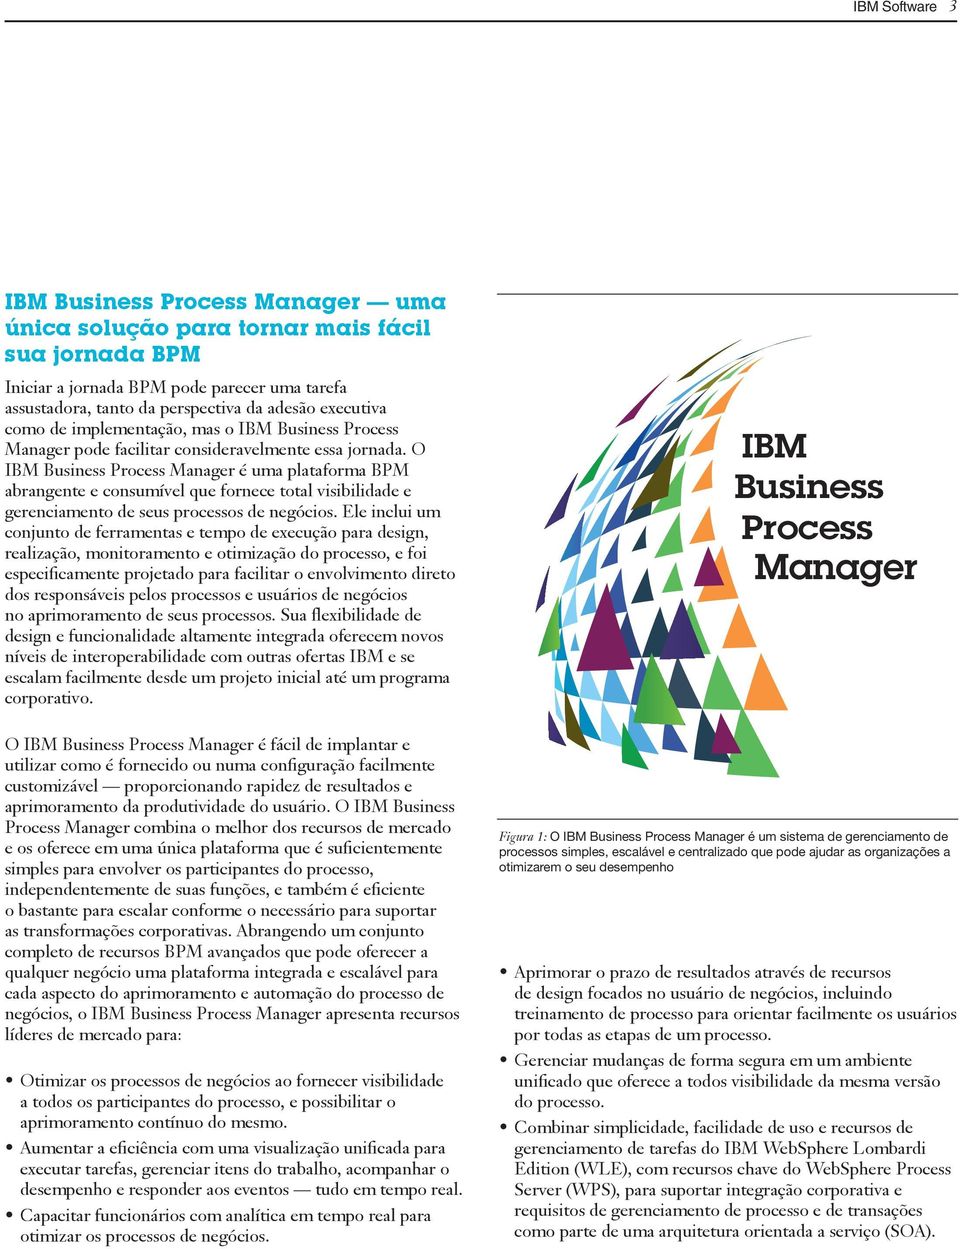 O IBM Business Process Manager é uma plataforma BPM abrangente e consumível que fornece total visibilidade e gerenciamento de seus processos de negócios.